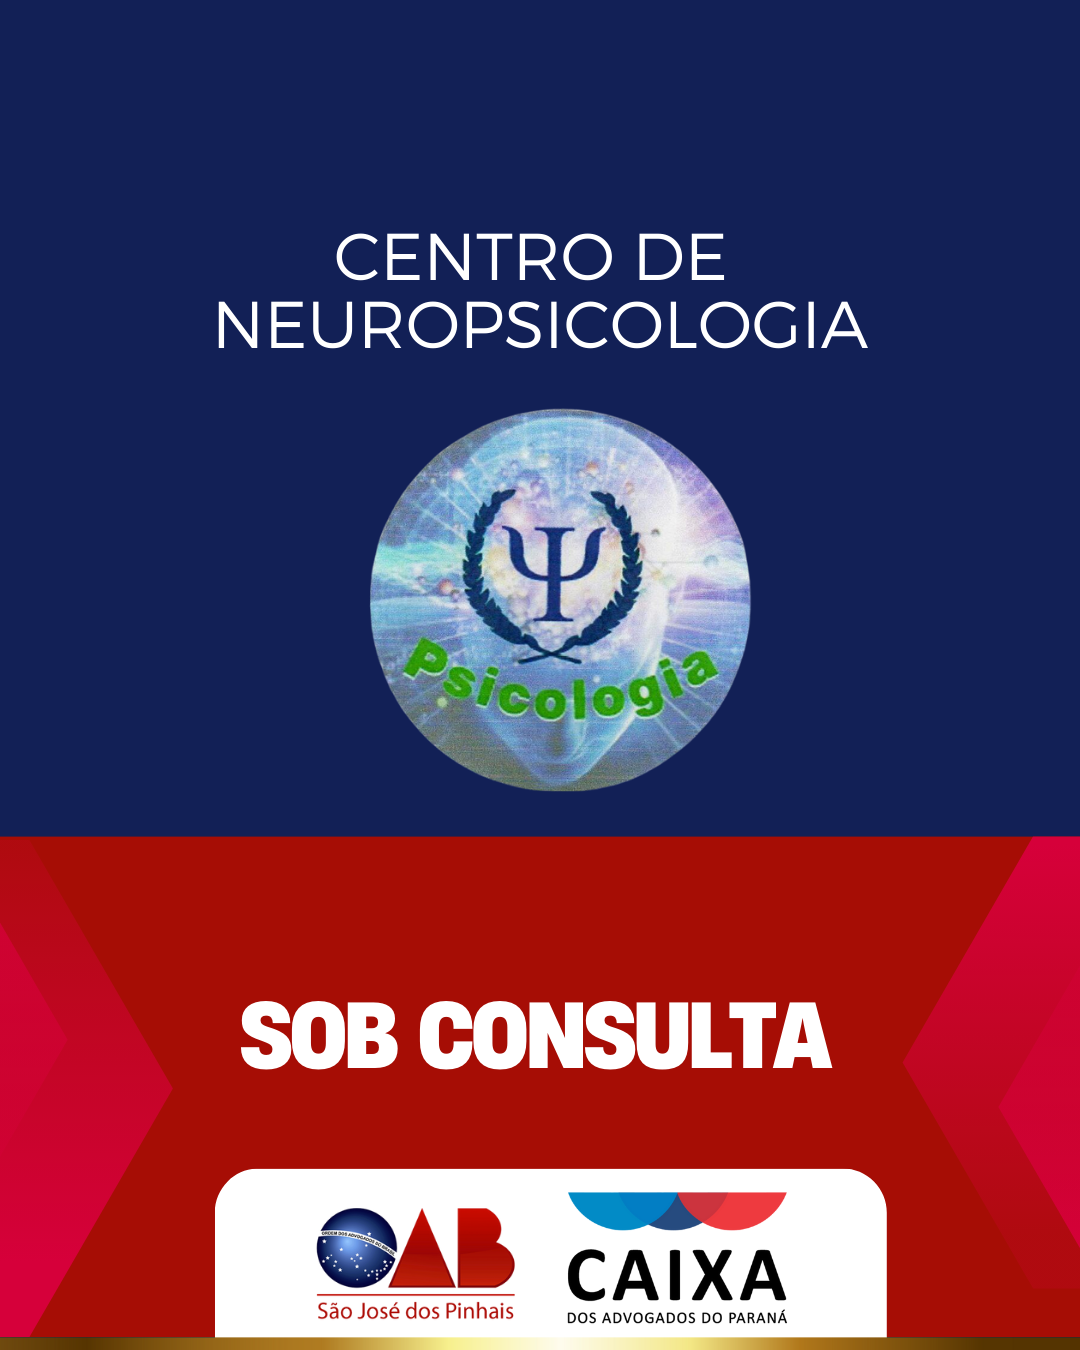 Centro de neuropsicologia